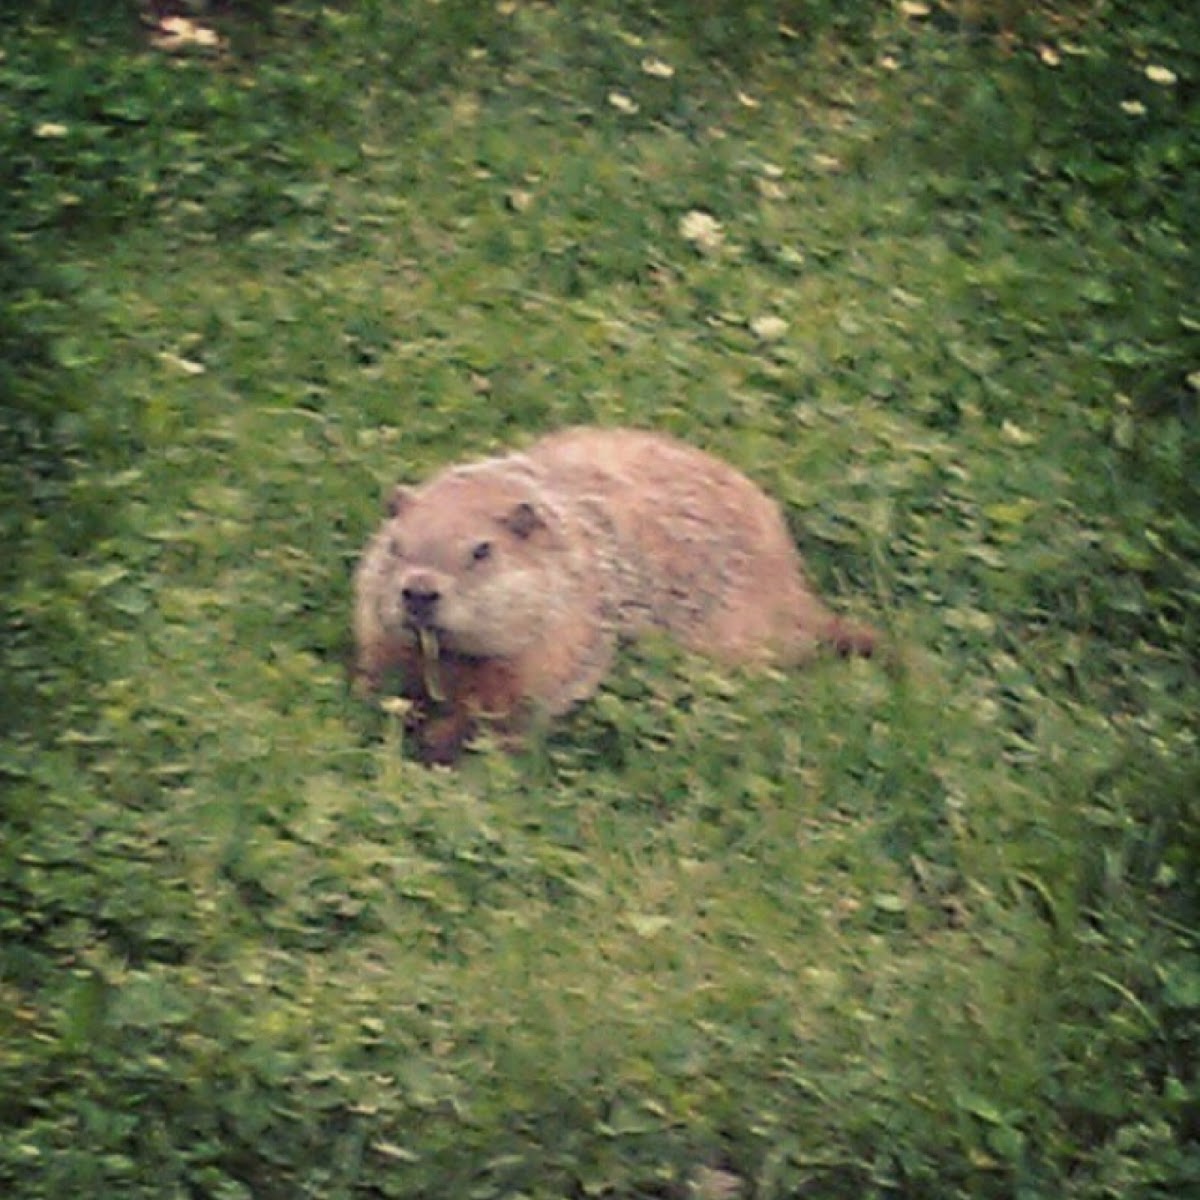 Groundhog or Woodchuck